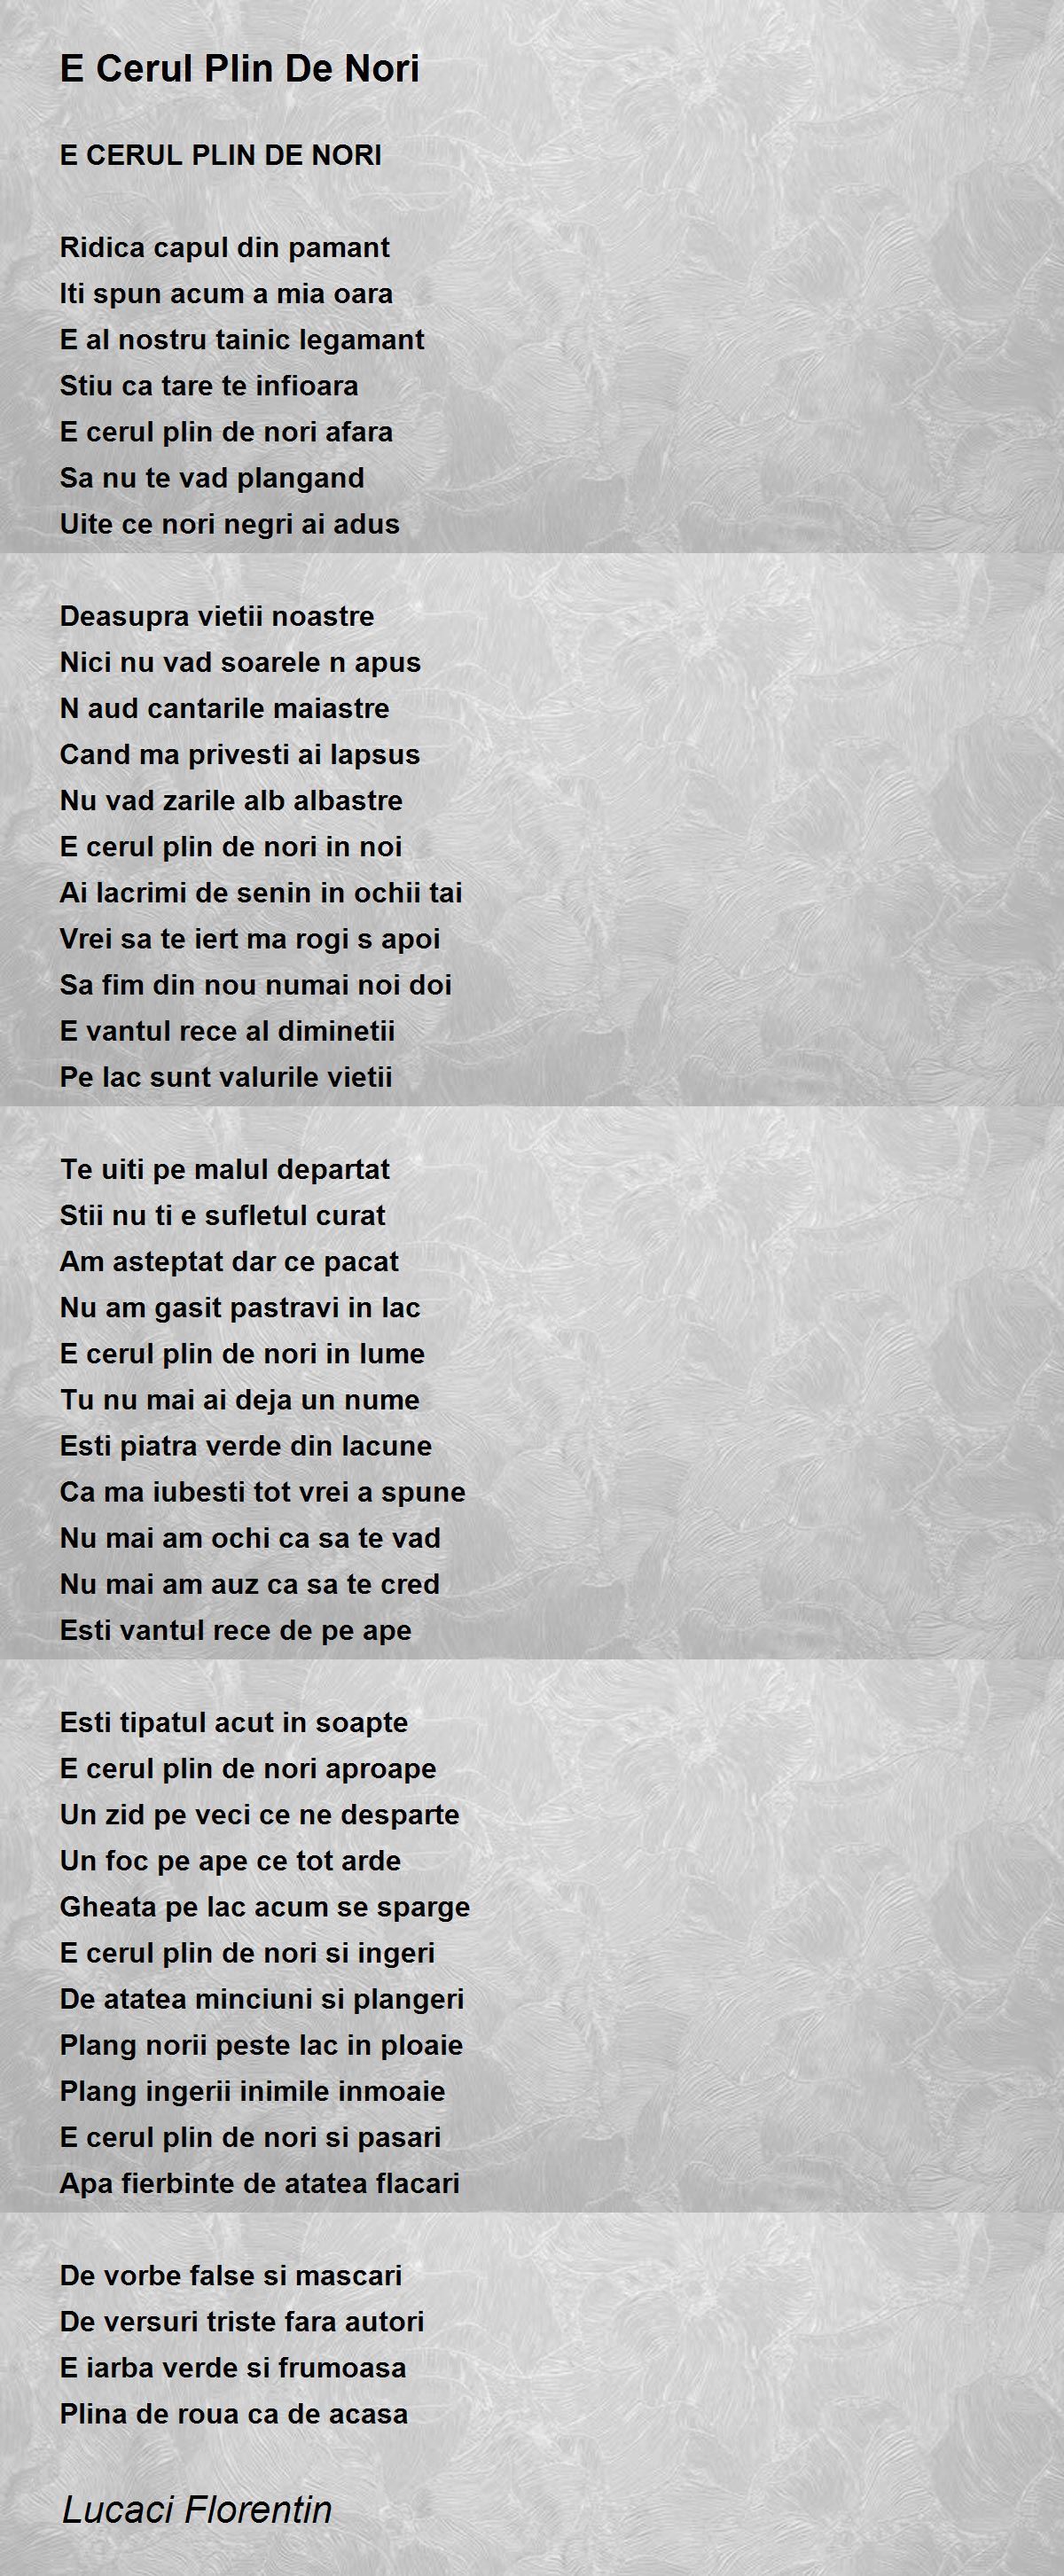 E Cerul Plin - E Plin De Nori Poem by Lucaci Florentin